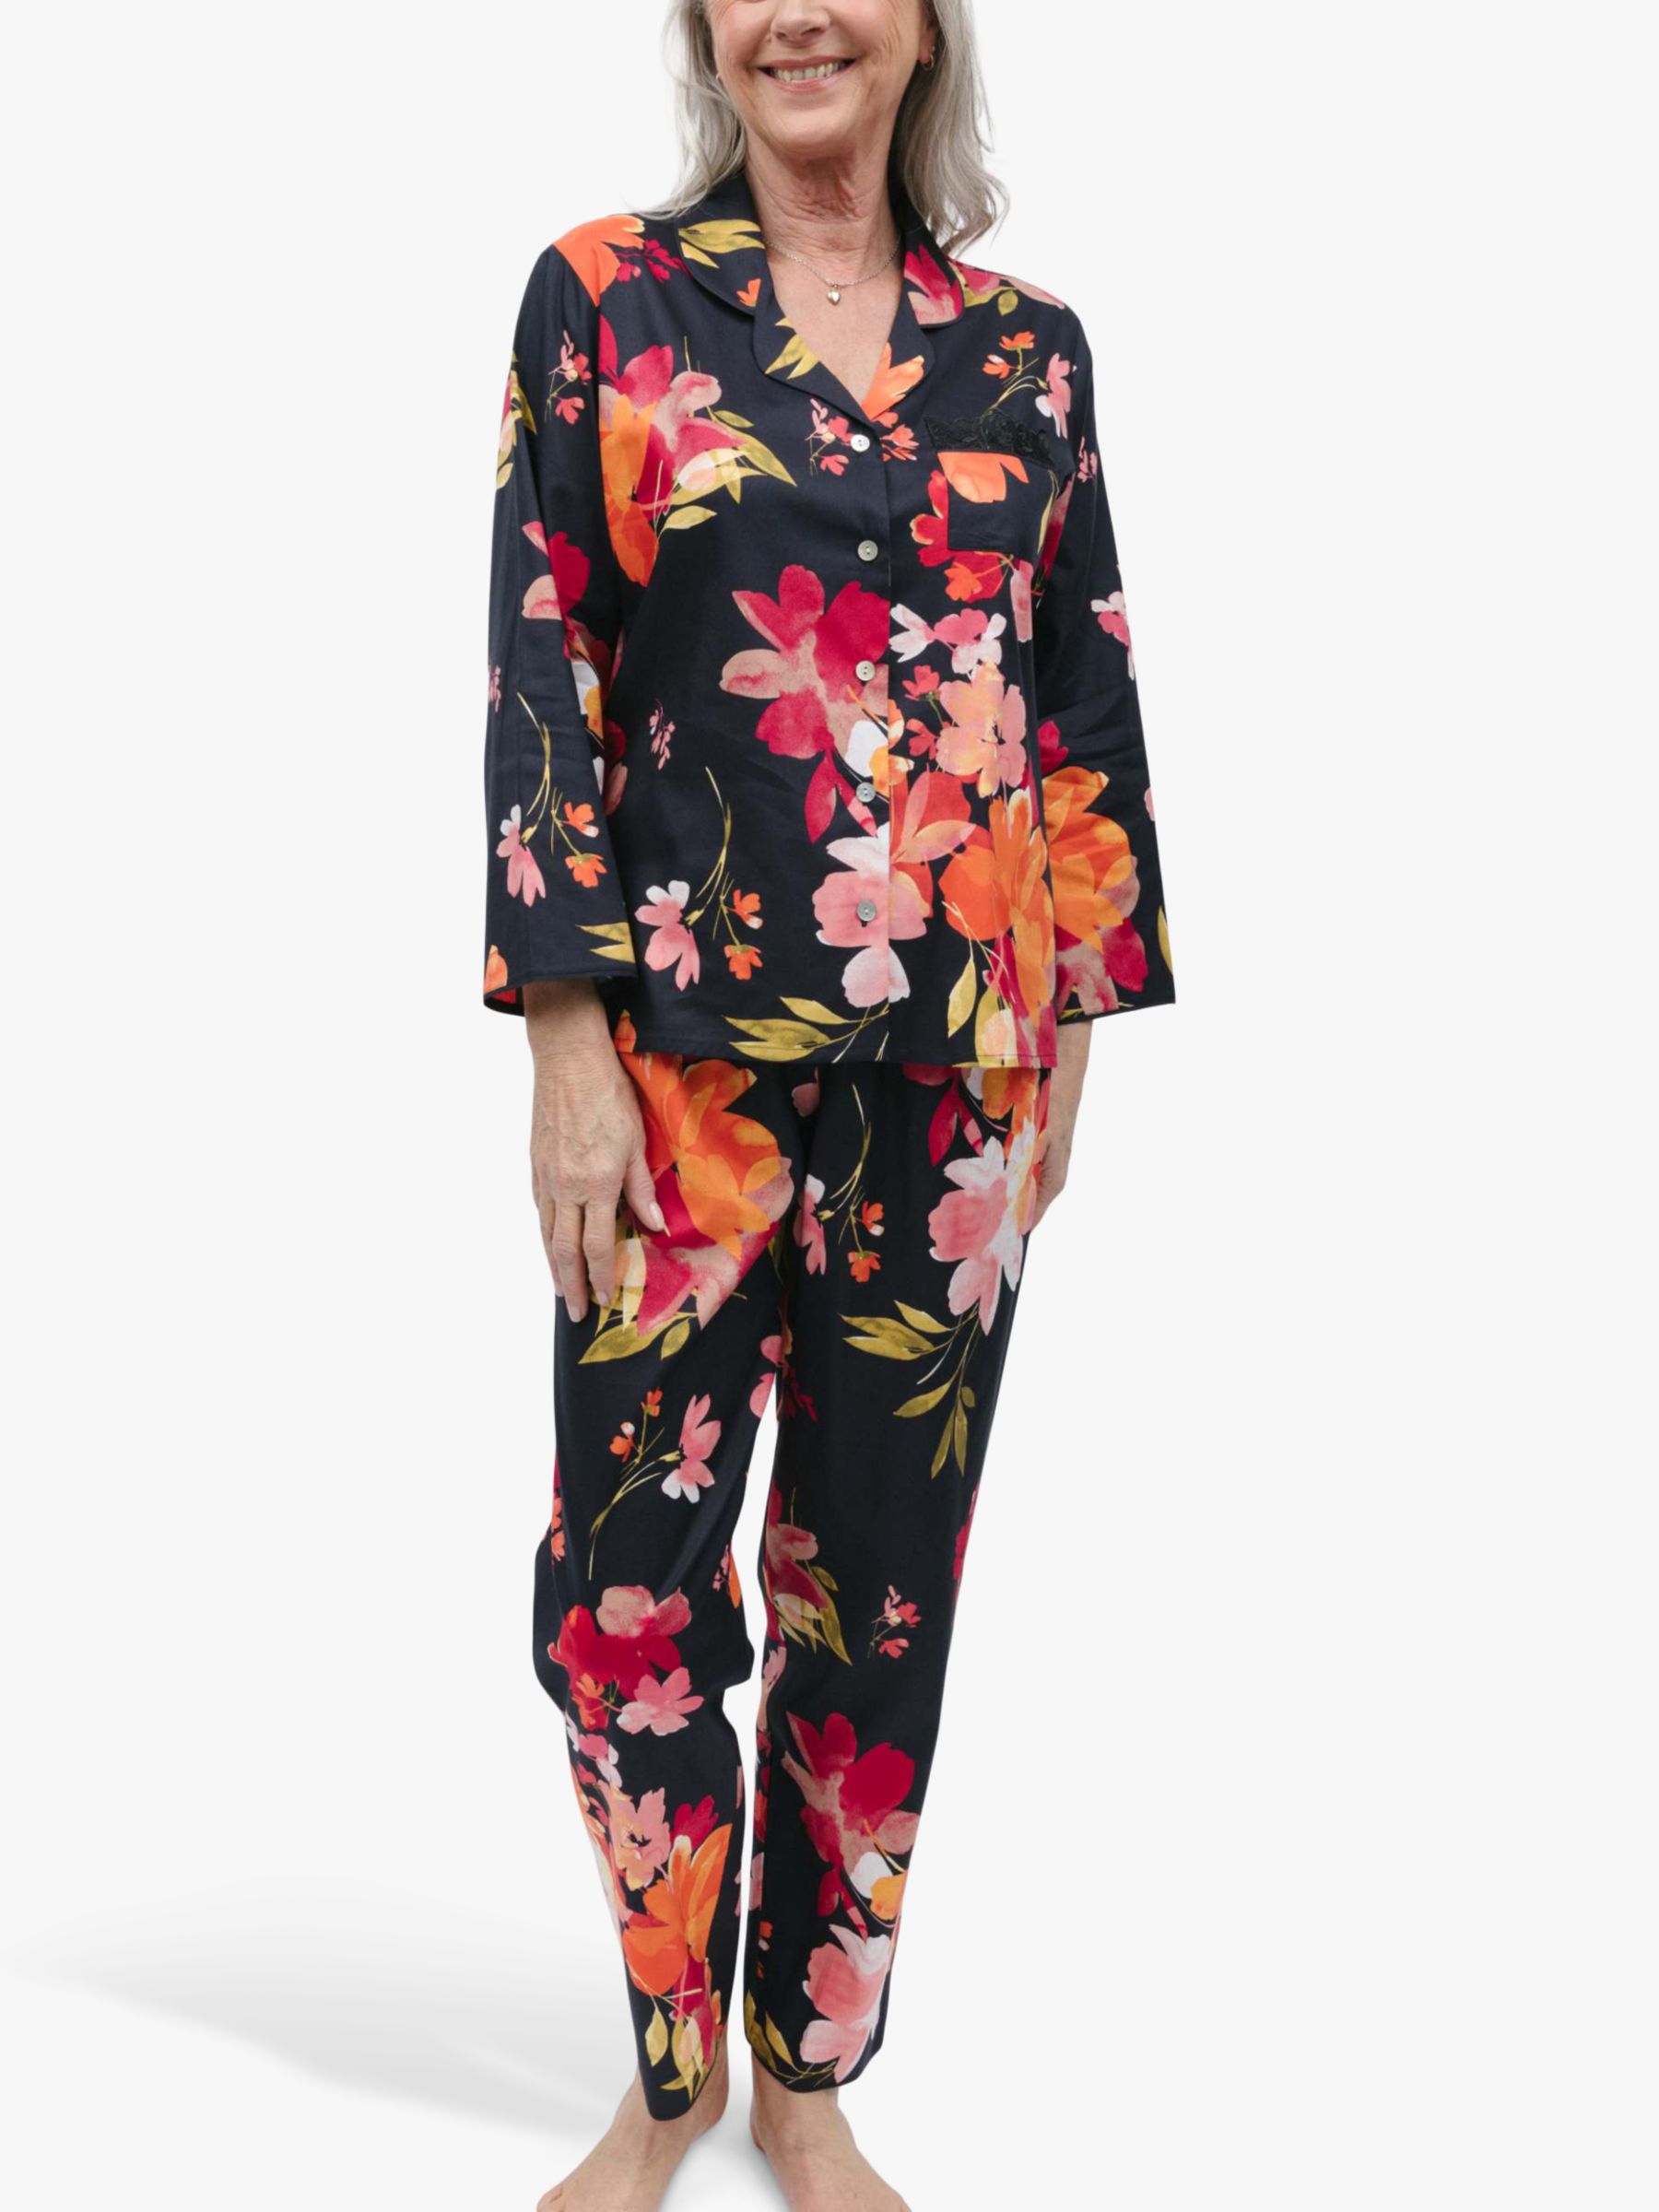 Buy Nora Rose by Cyberjammies Winnie Floral Print Pyjamas, Black/Multi Online at johnlewis.com